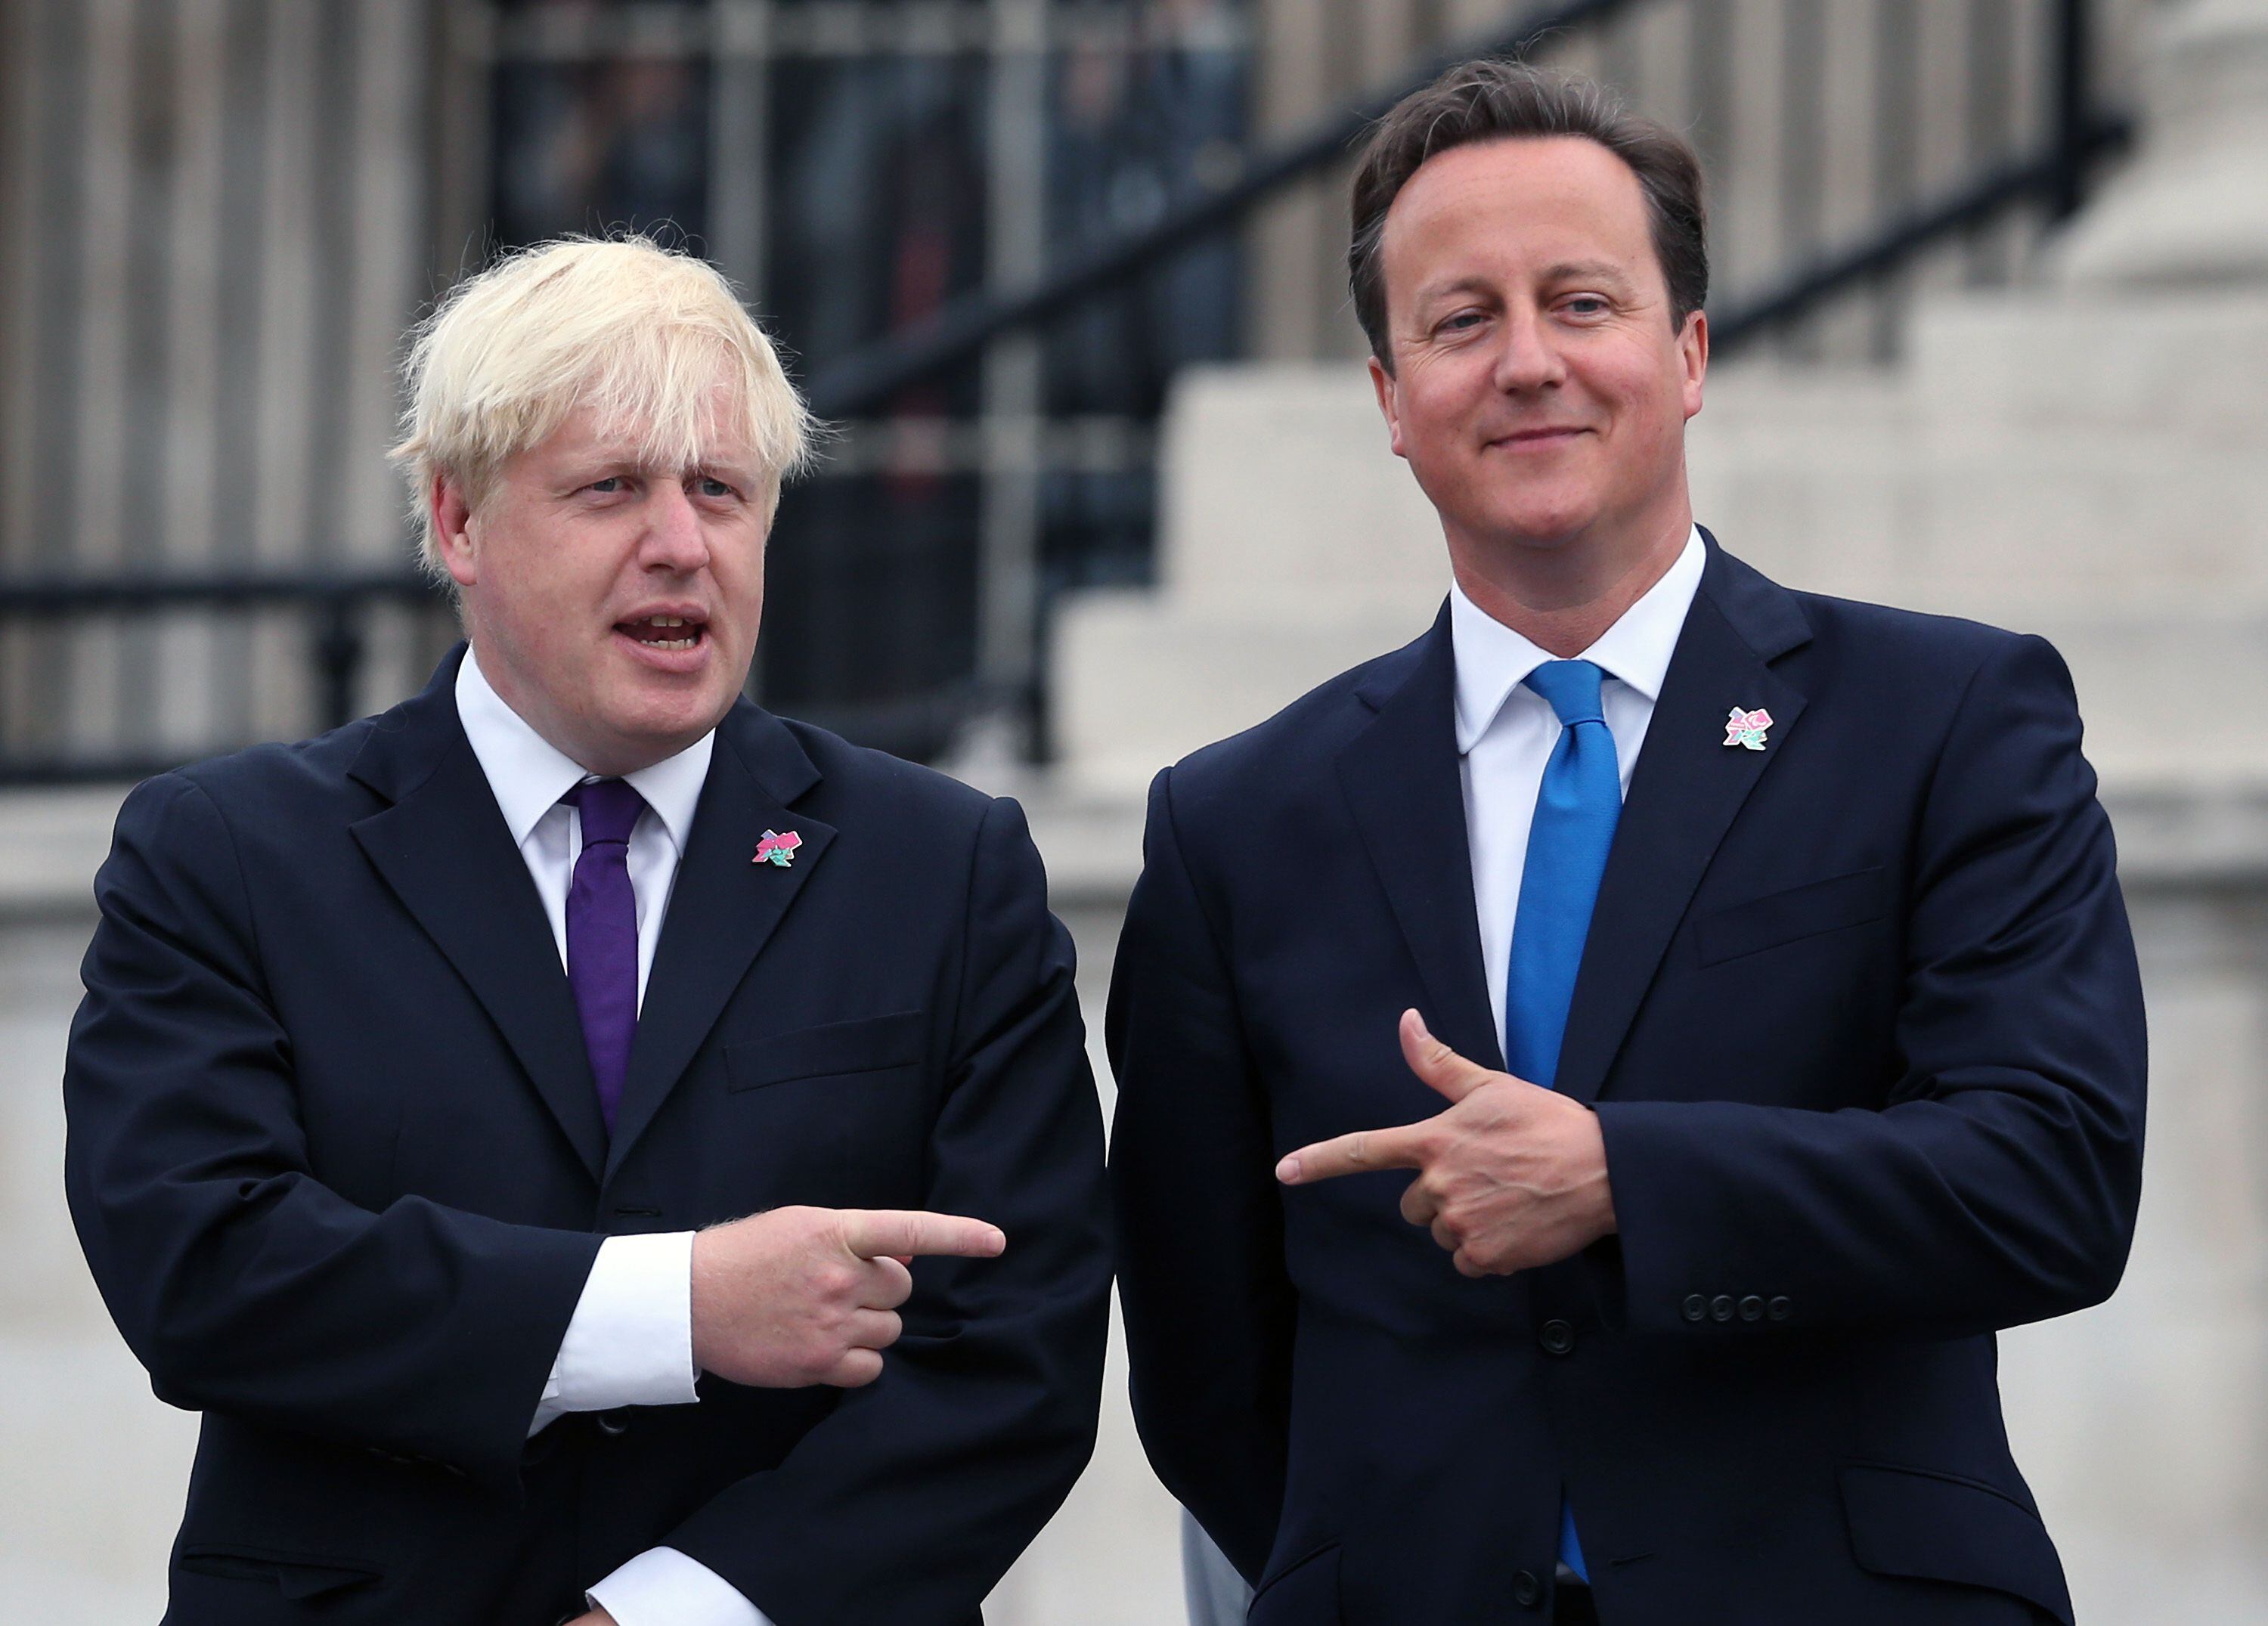 El alcalde de Londres durante los Juegos Olímpicos de 2012, Boris Johnson, a la izquierda, y el entonces primer ministro británico, David Cameron, el 24 de agosto de 2012 en la capital británica. 